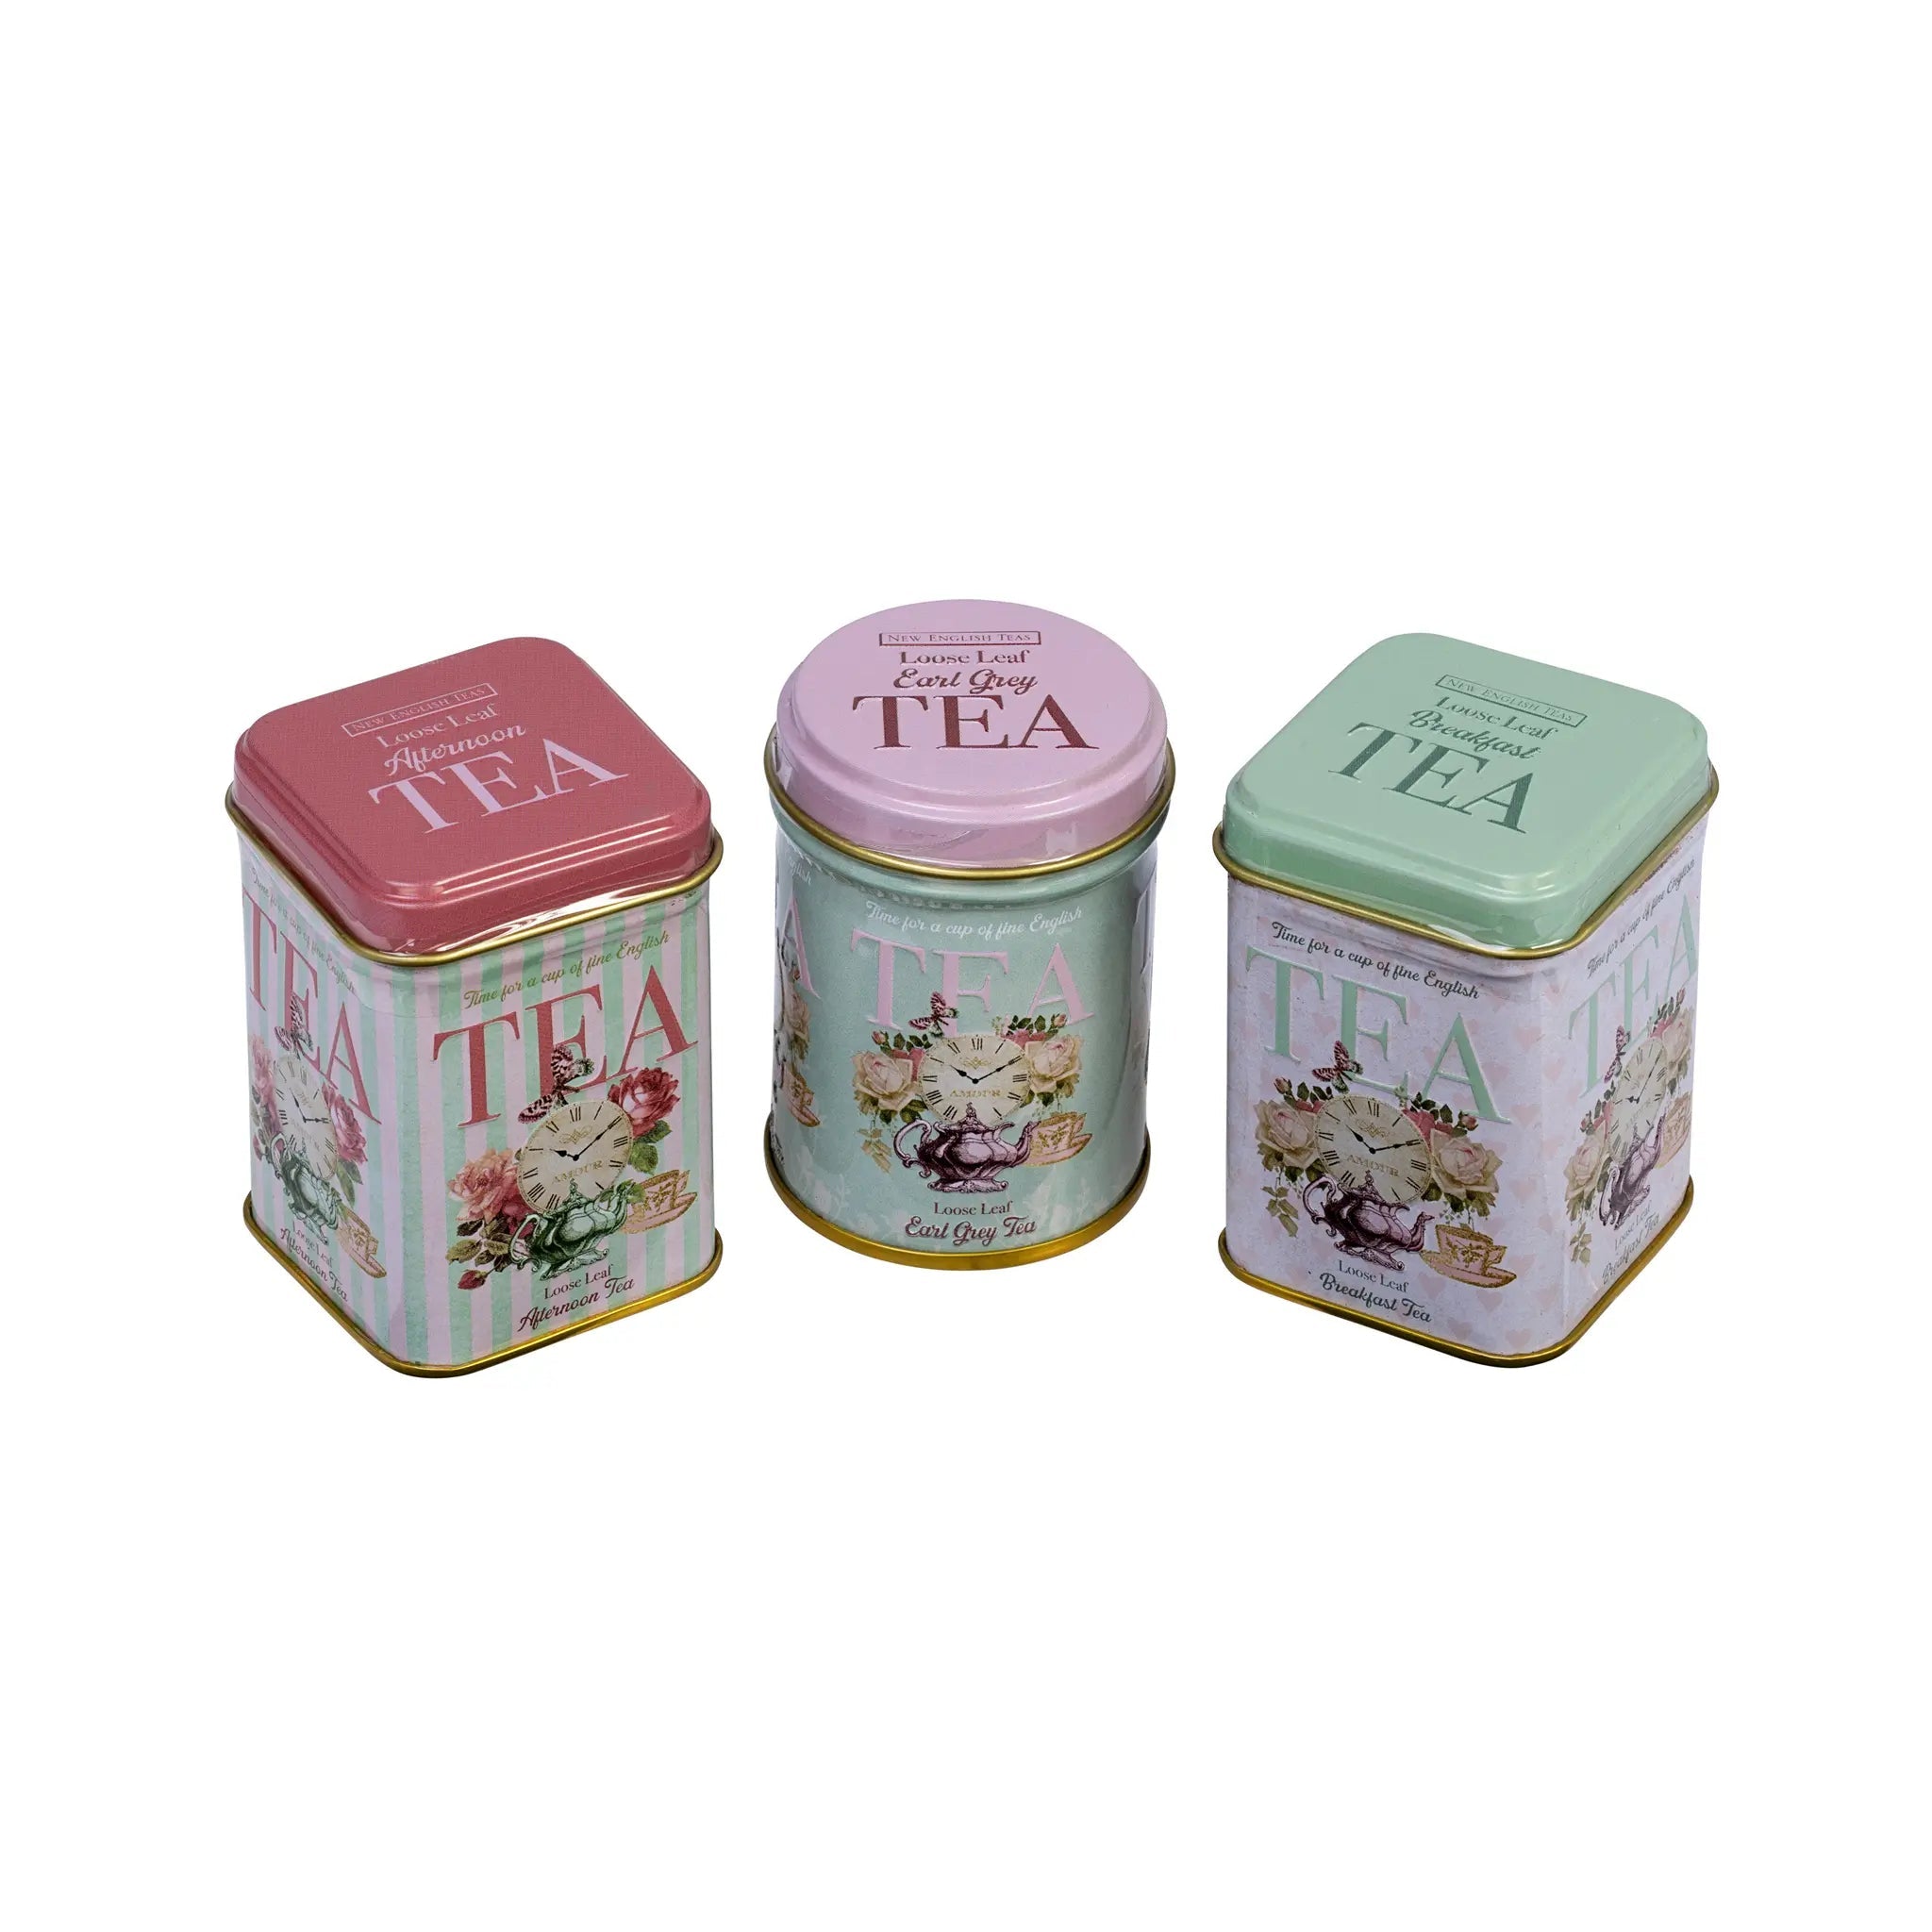 Time For Tea Mini Tea Tin Gift Set Tea Tins New English Teas 